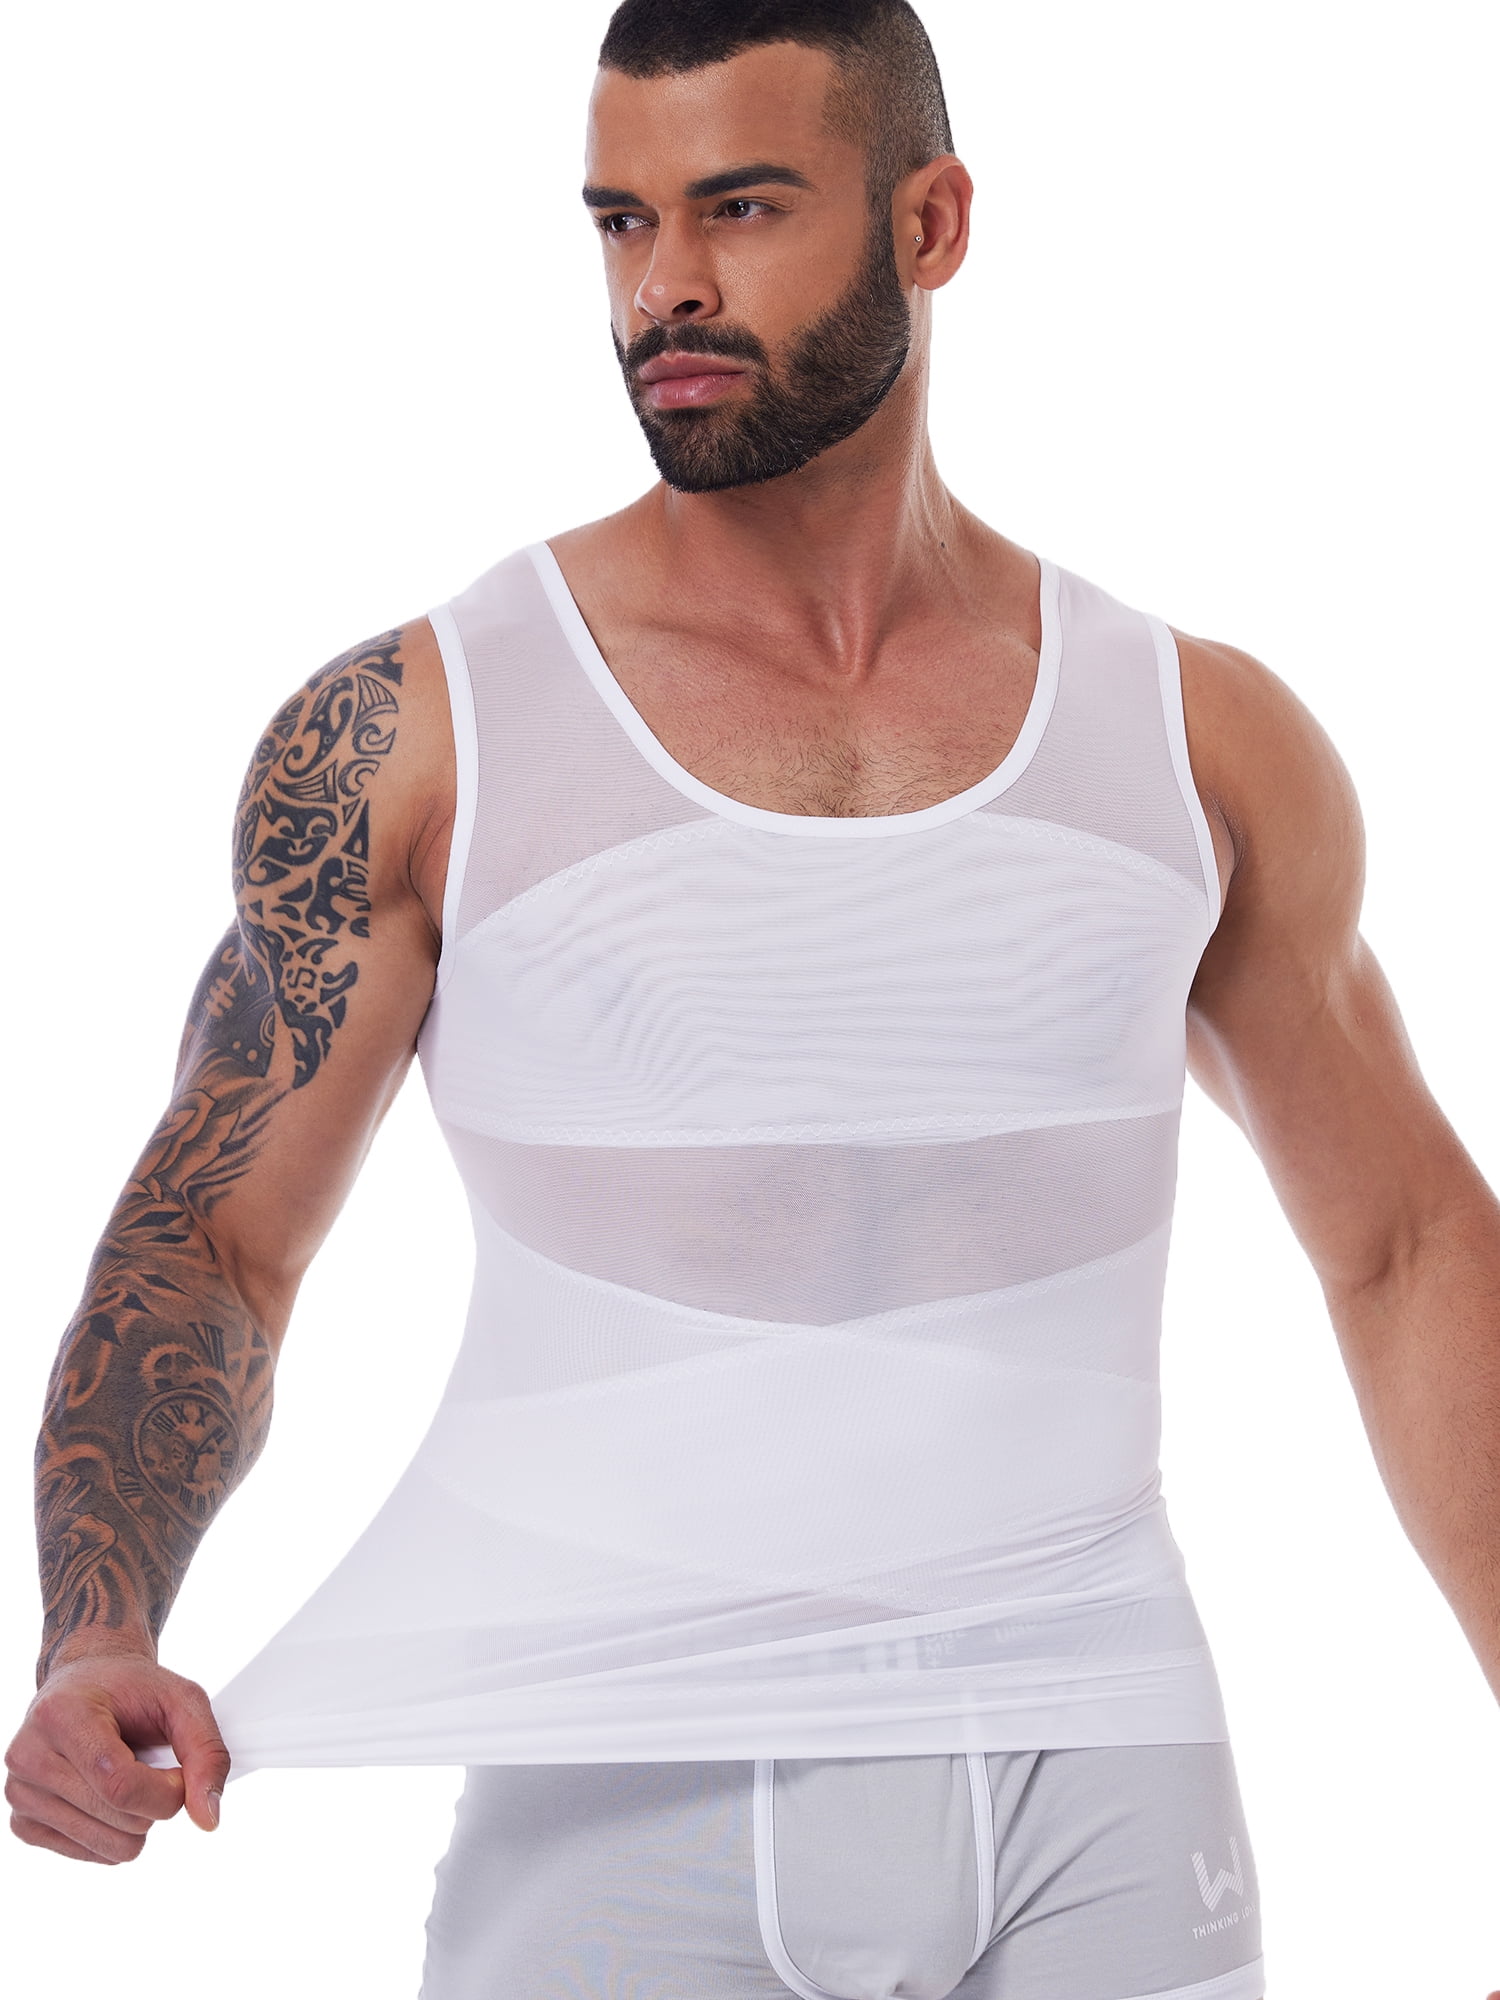 QRIC Men's Compression Shirt Body Shaper Slimming Workou Vest